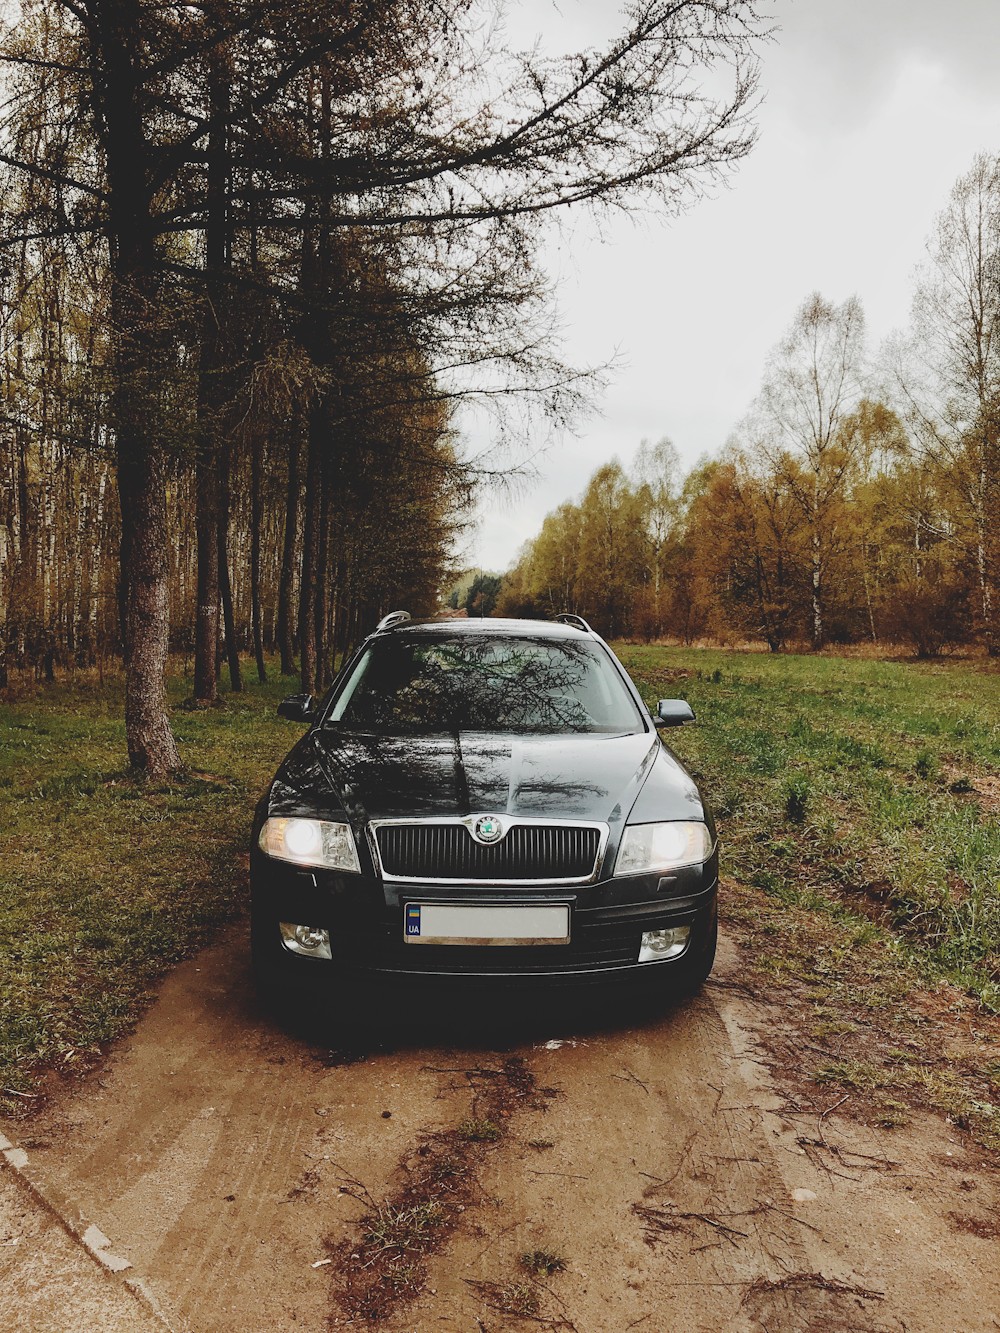 Coche negro aparcado en un camino de tierra marrón cerca de los árboles durante el día